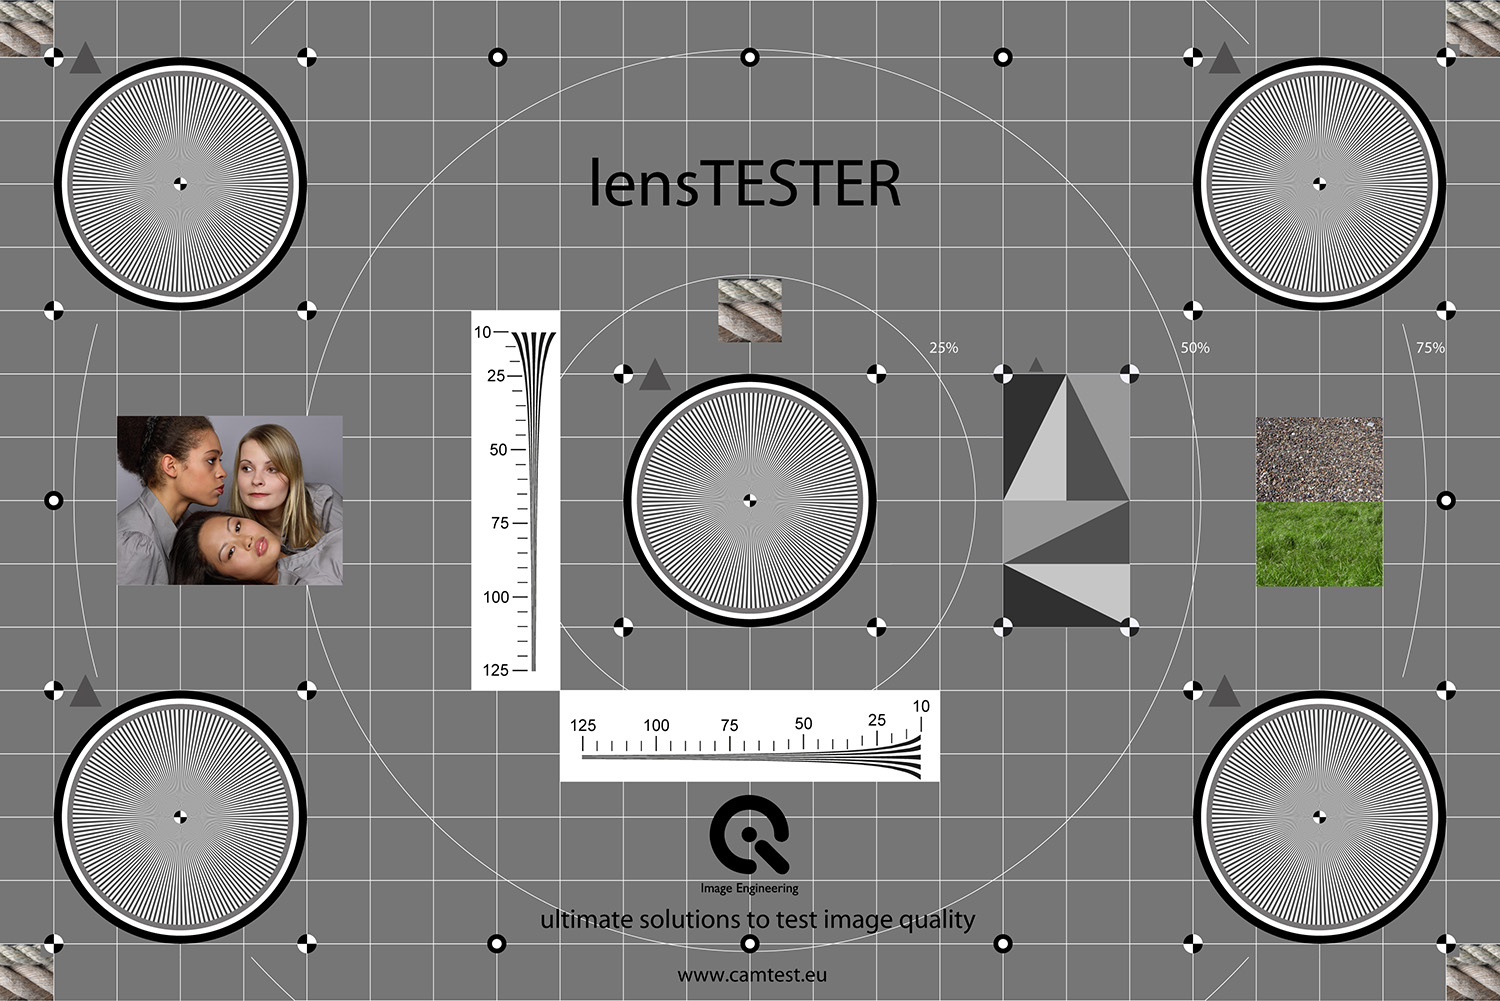 lensTESTER image